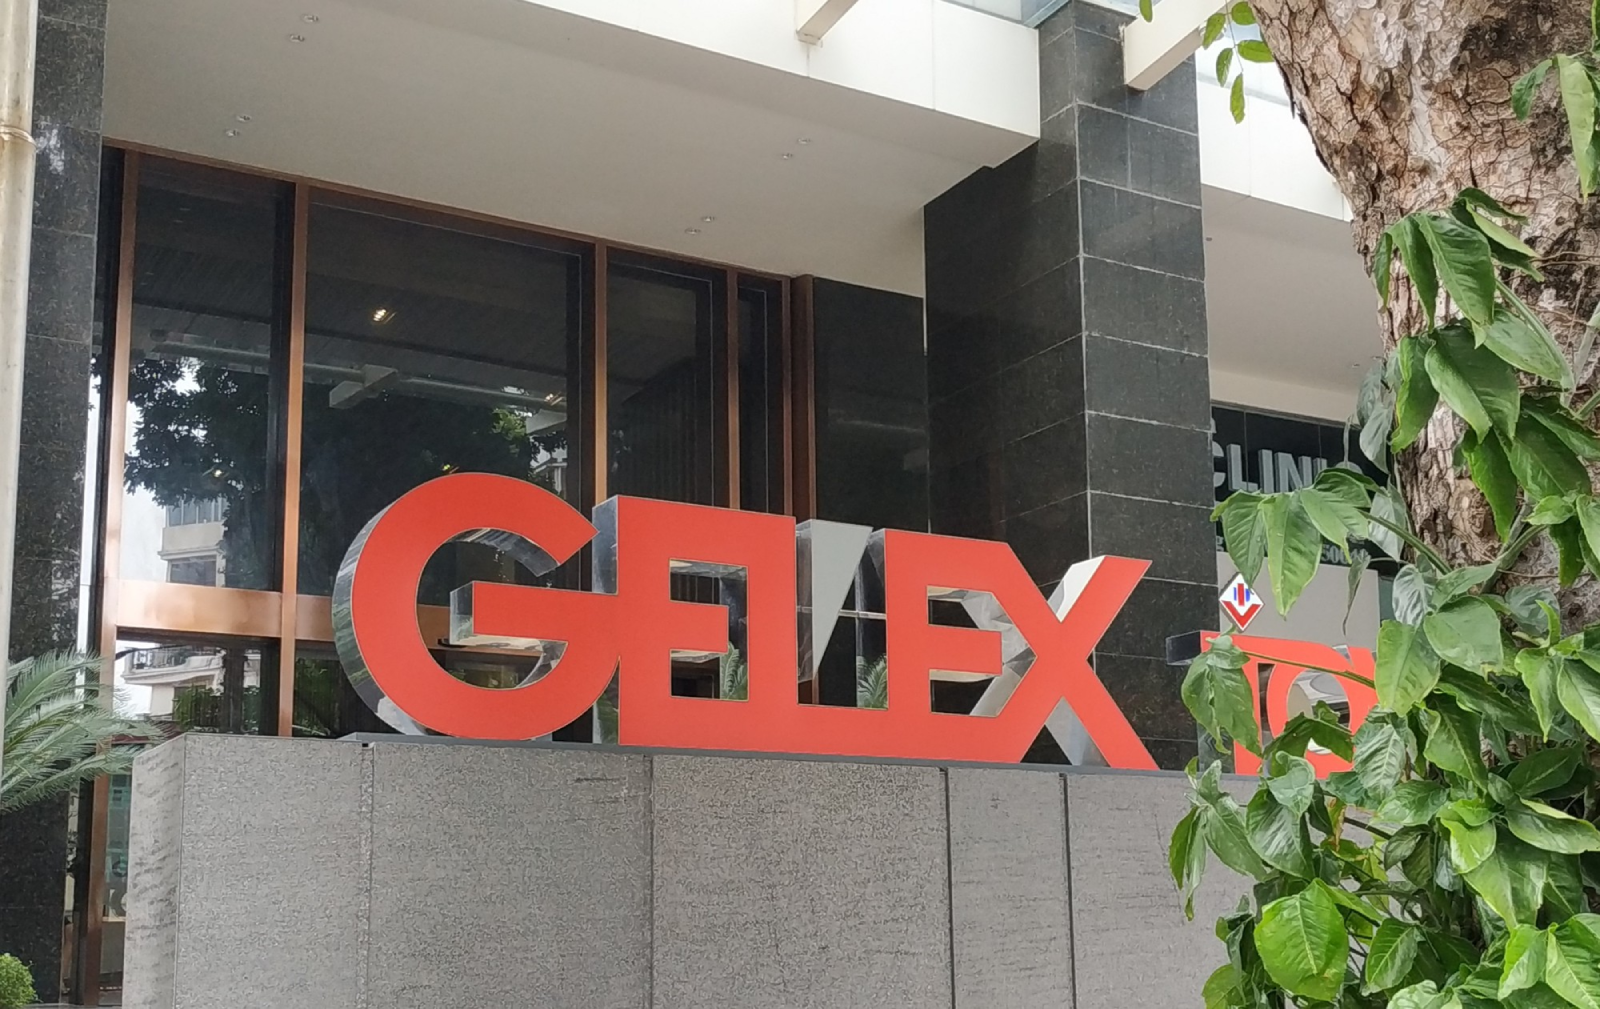 Tập đoàn Gelex (GEX) dự kiến mua lại gần 500 tỷ đồng trái phiếu trước hạn